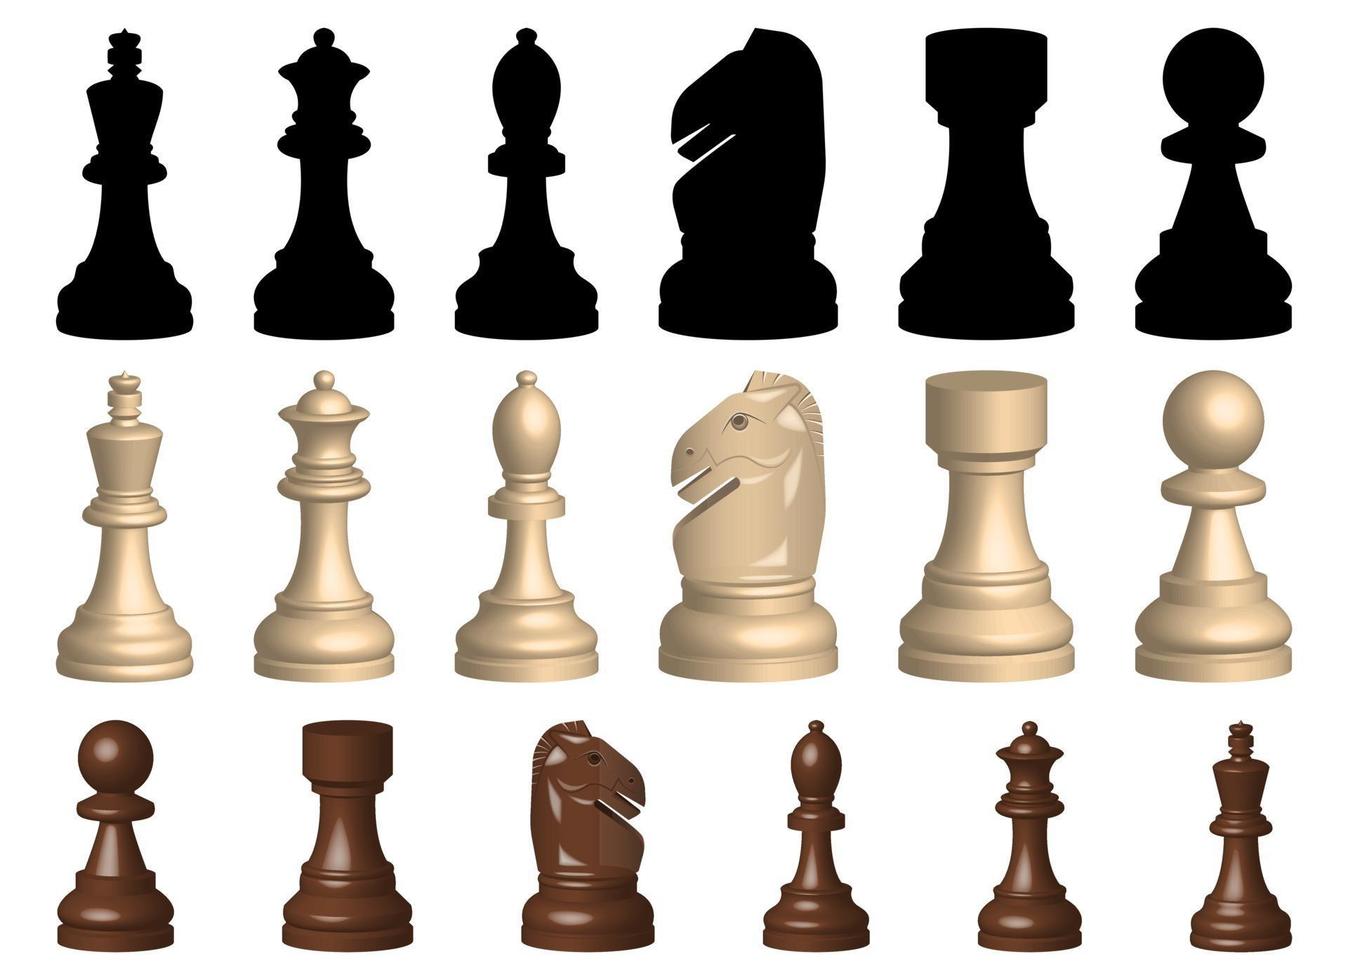 Jogo de xadrez de peças de ilustração vetorial conjunto isolado no fundo branco vetor